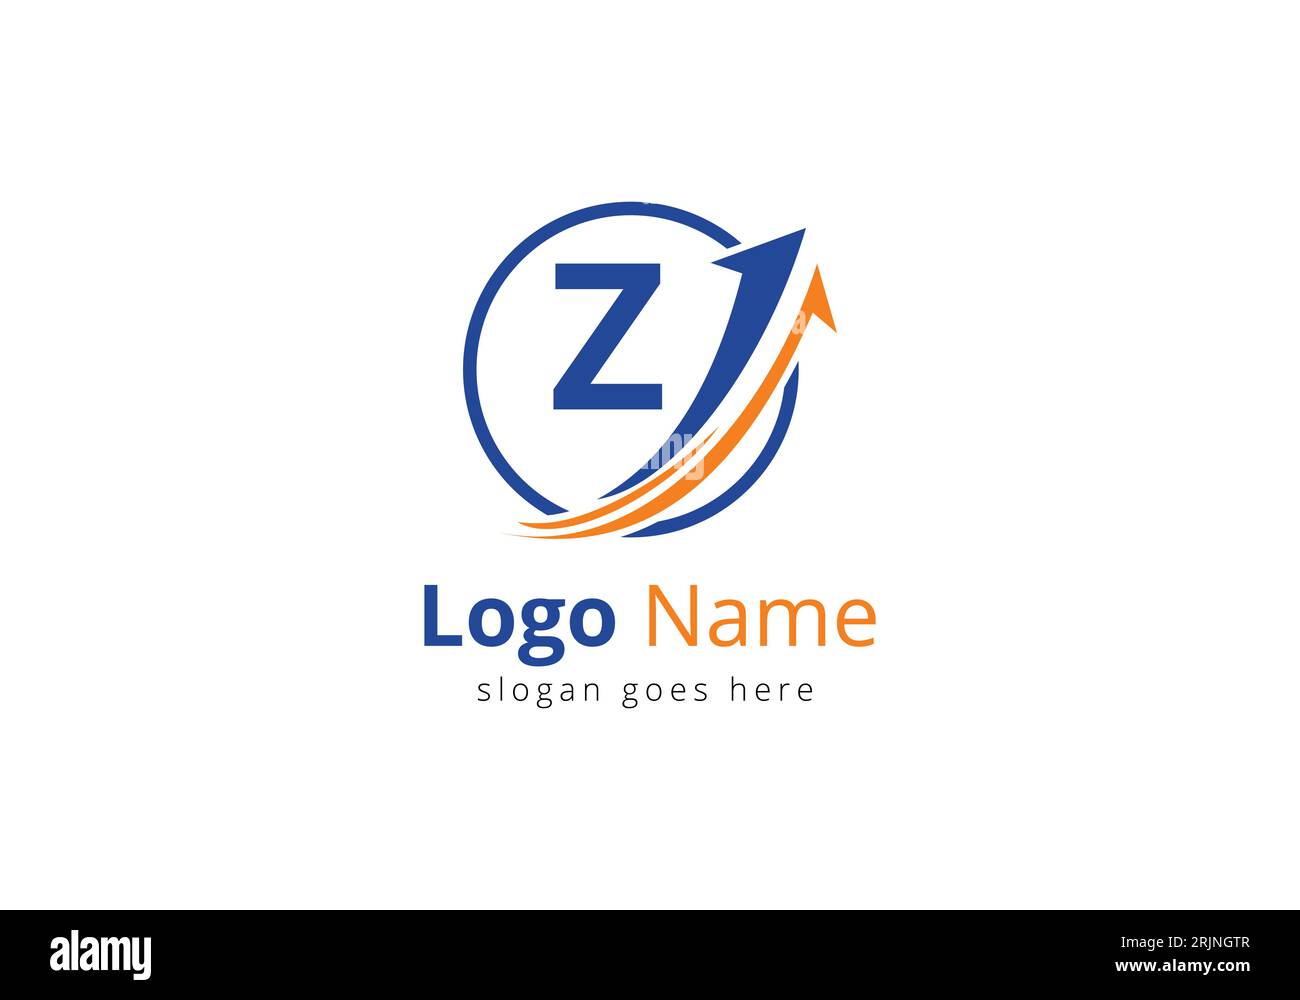 Logo de financement avec concept lettre Z. Concept de logo financier ou de réussite. Logo pour l'entreprise comptable et l'identité de l'entreprise Illustration de Vecteur